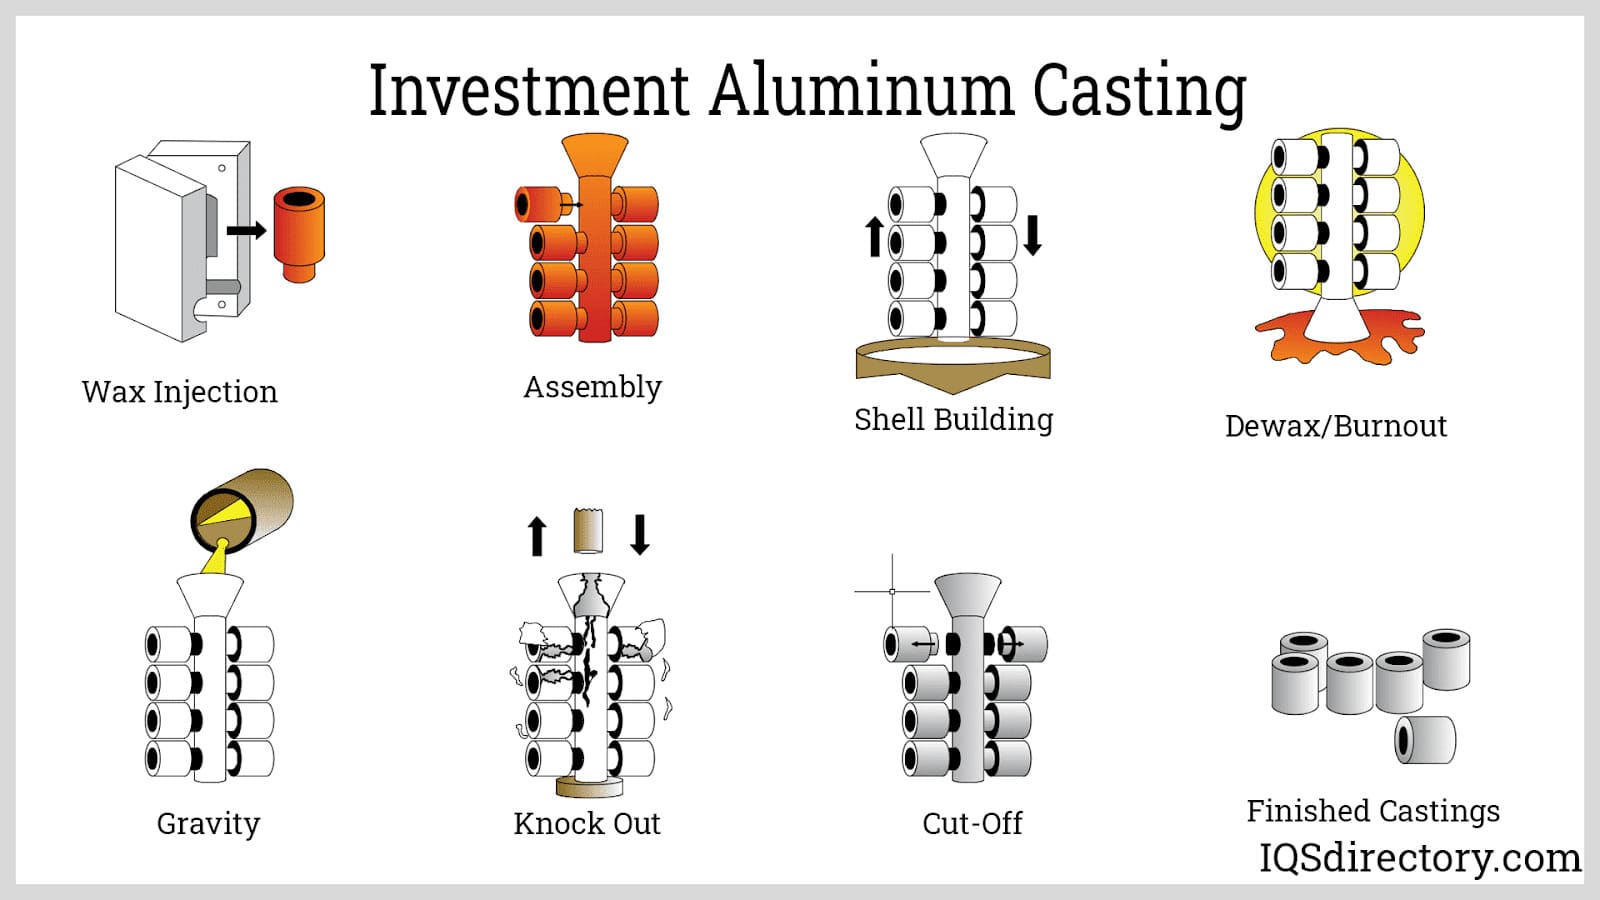 Investment Aluminum Casting